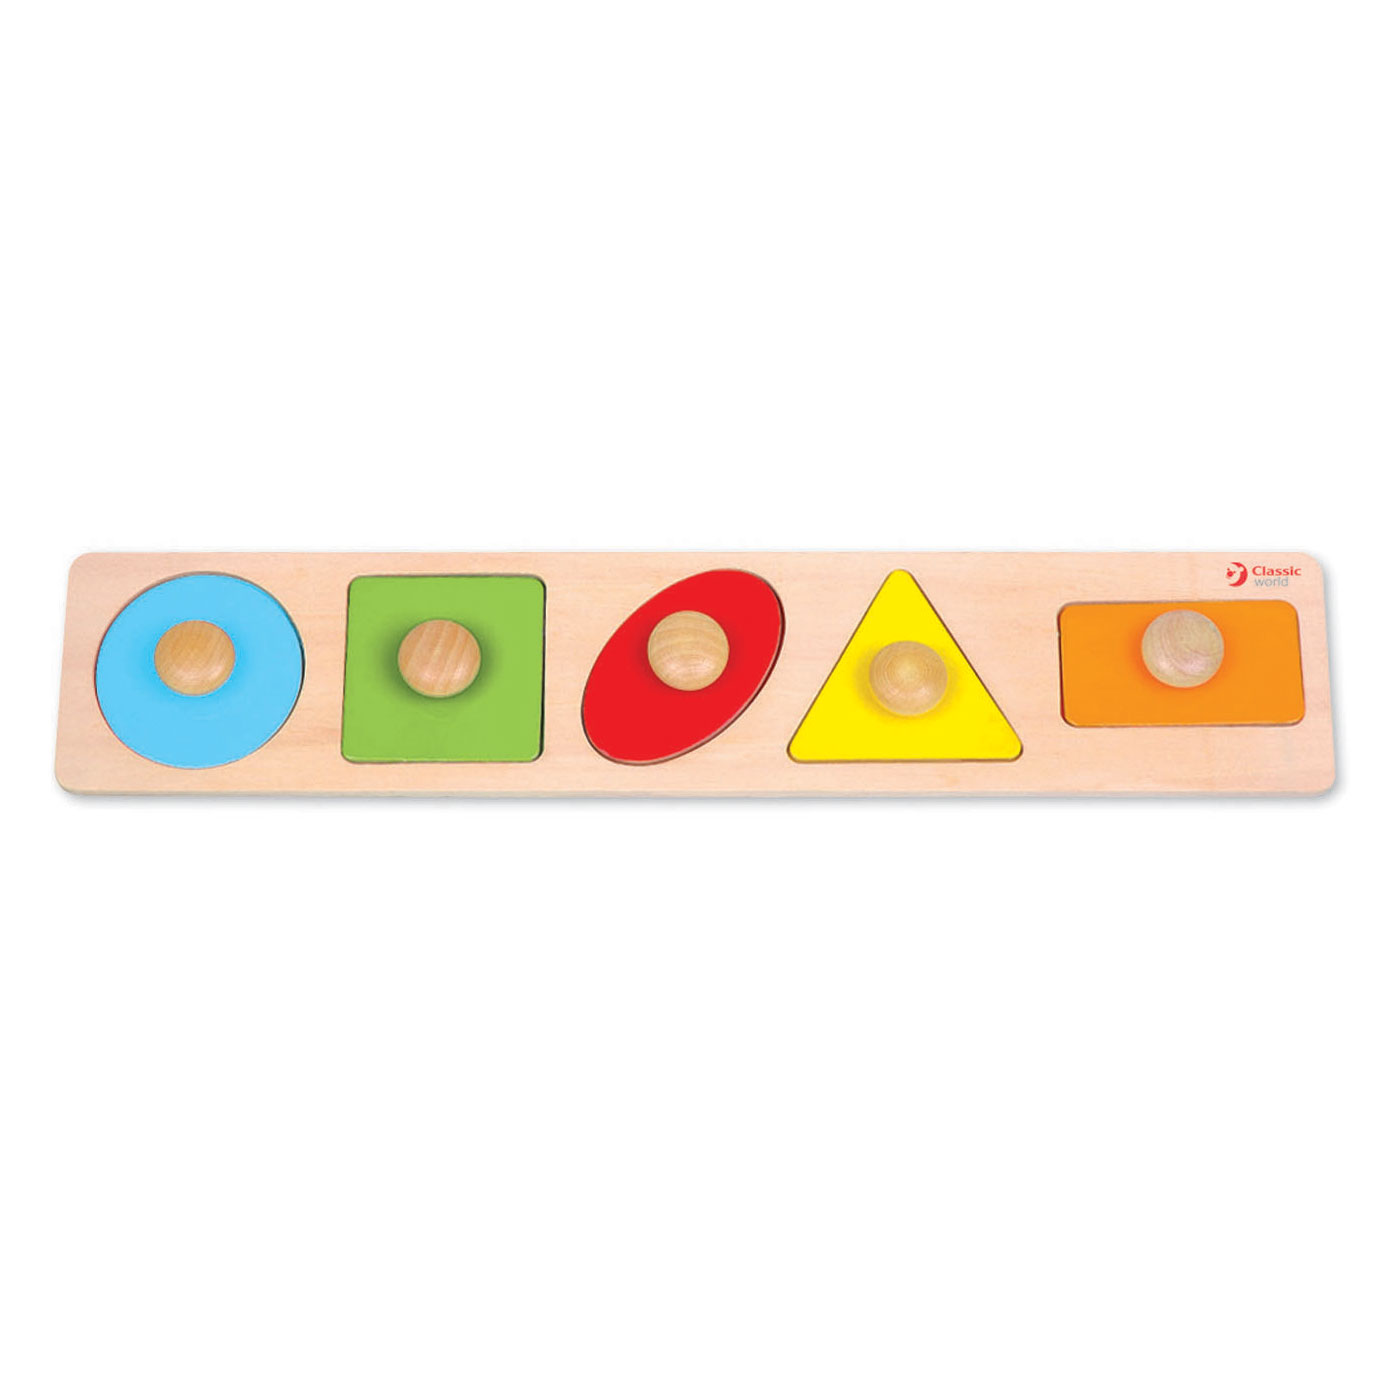 CLASSIC WORLD puzzel voor kinderen leren vormen, kleurenfiguren 7 st.